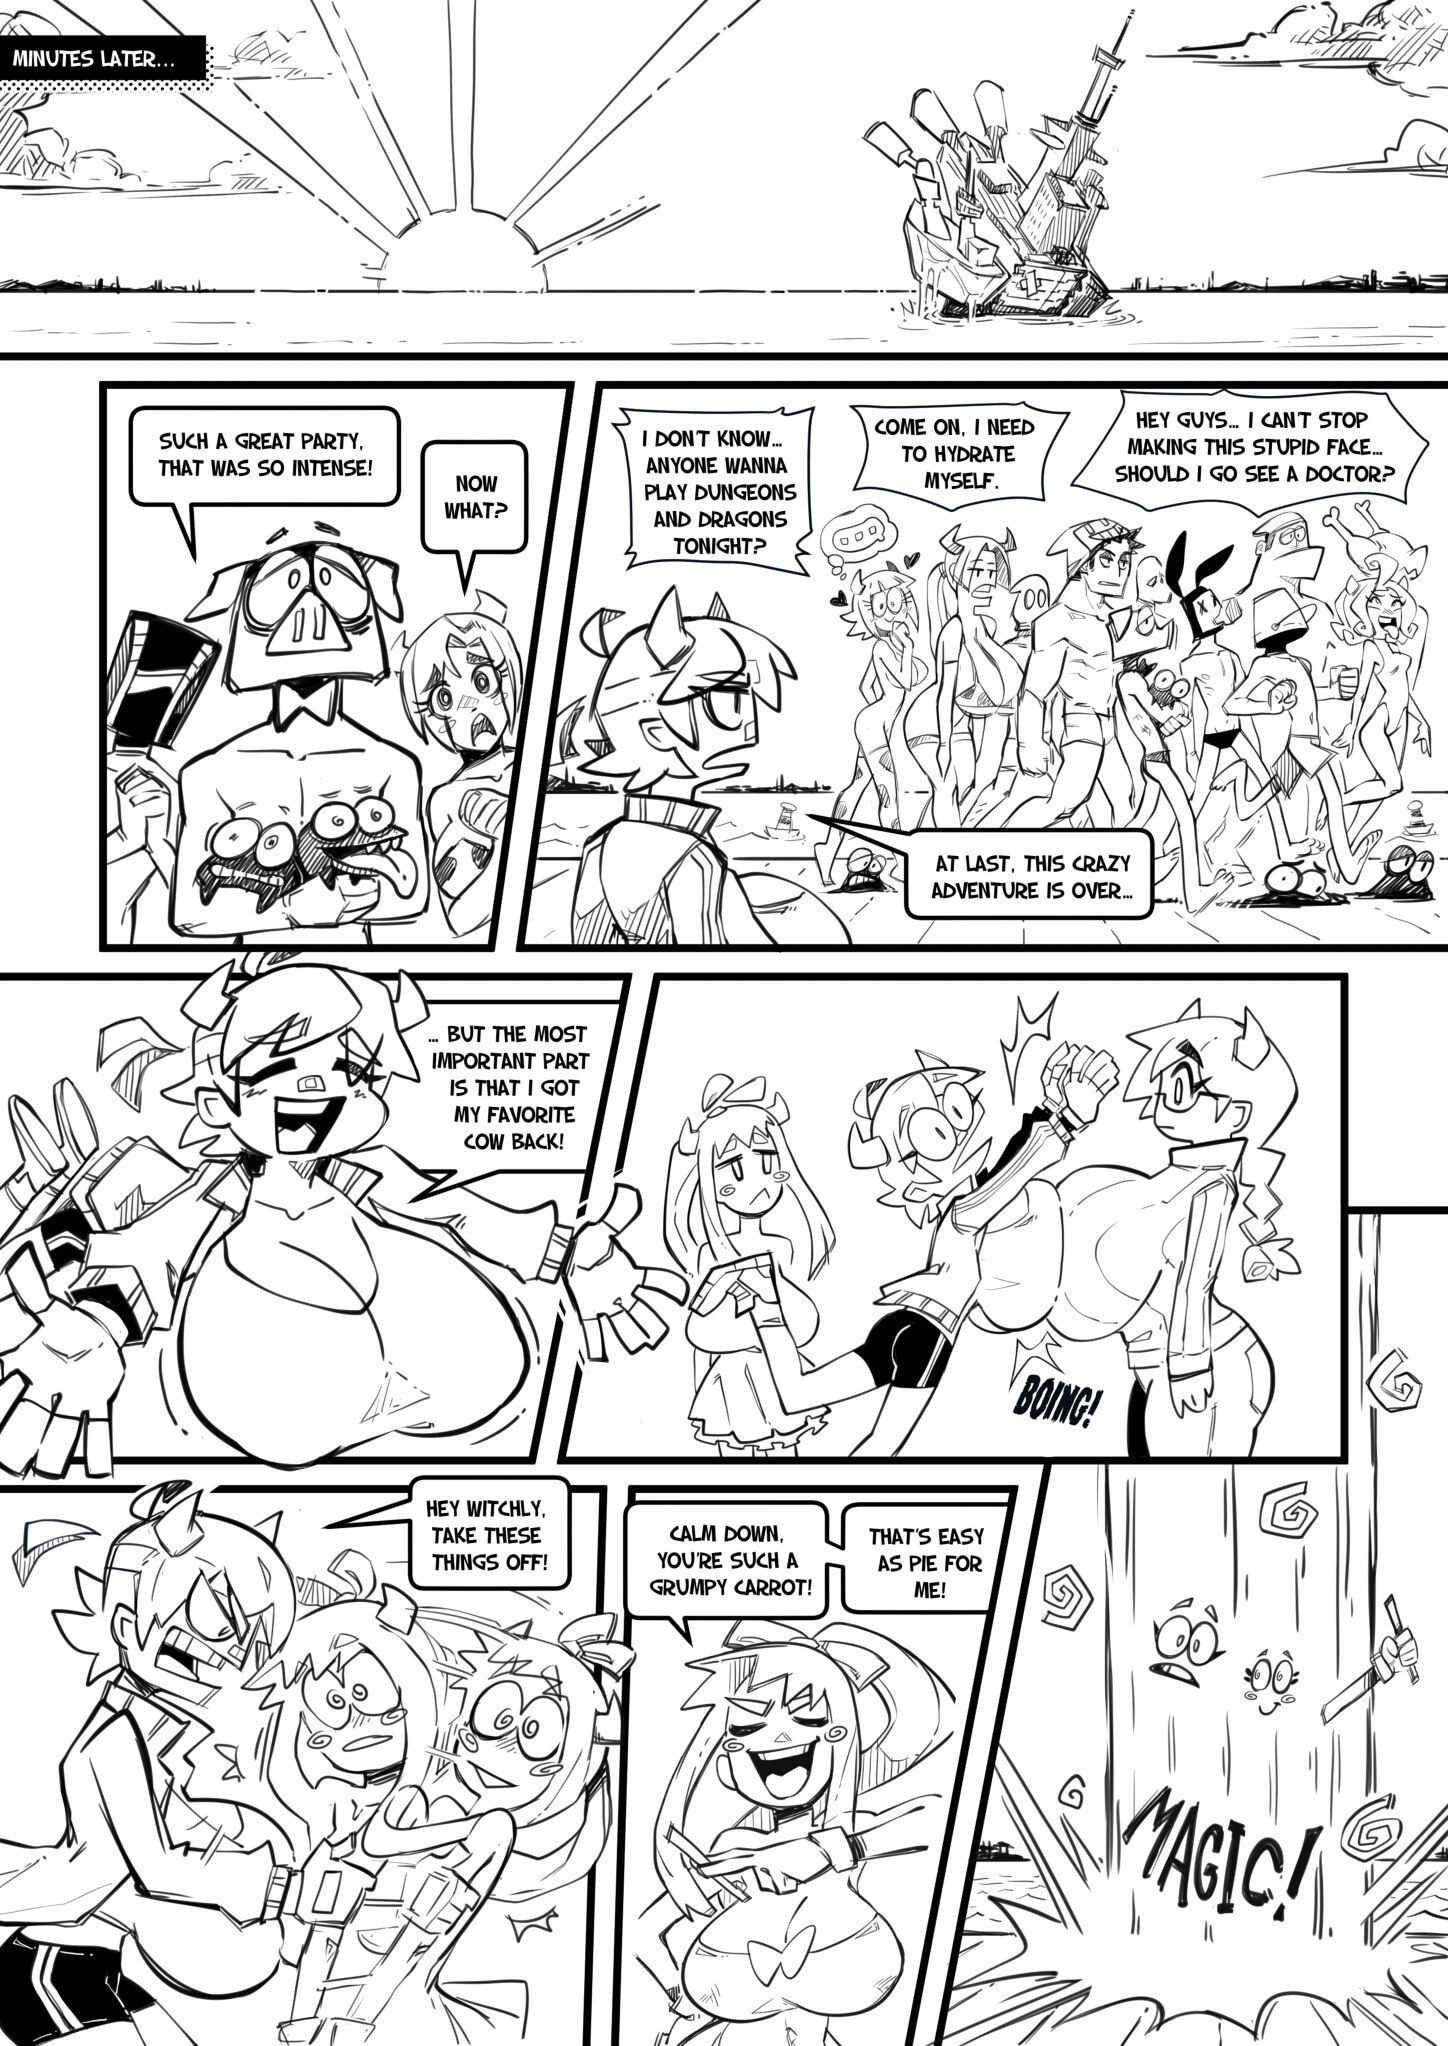 Skarpworld 10: Milk Crisis 4 - Gravity - Page 30